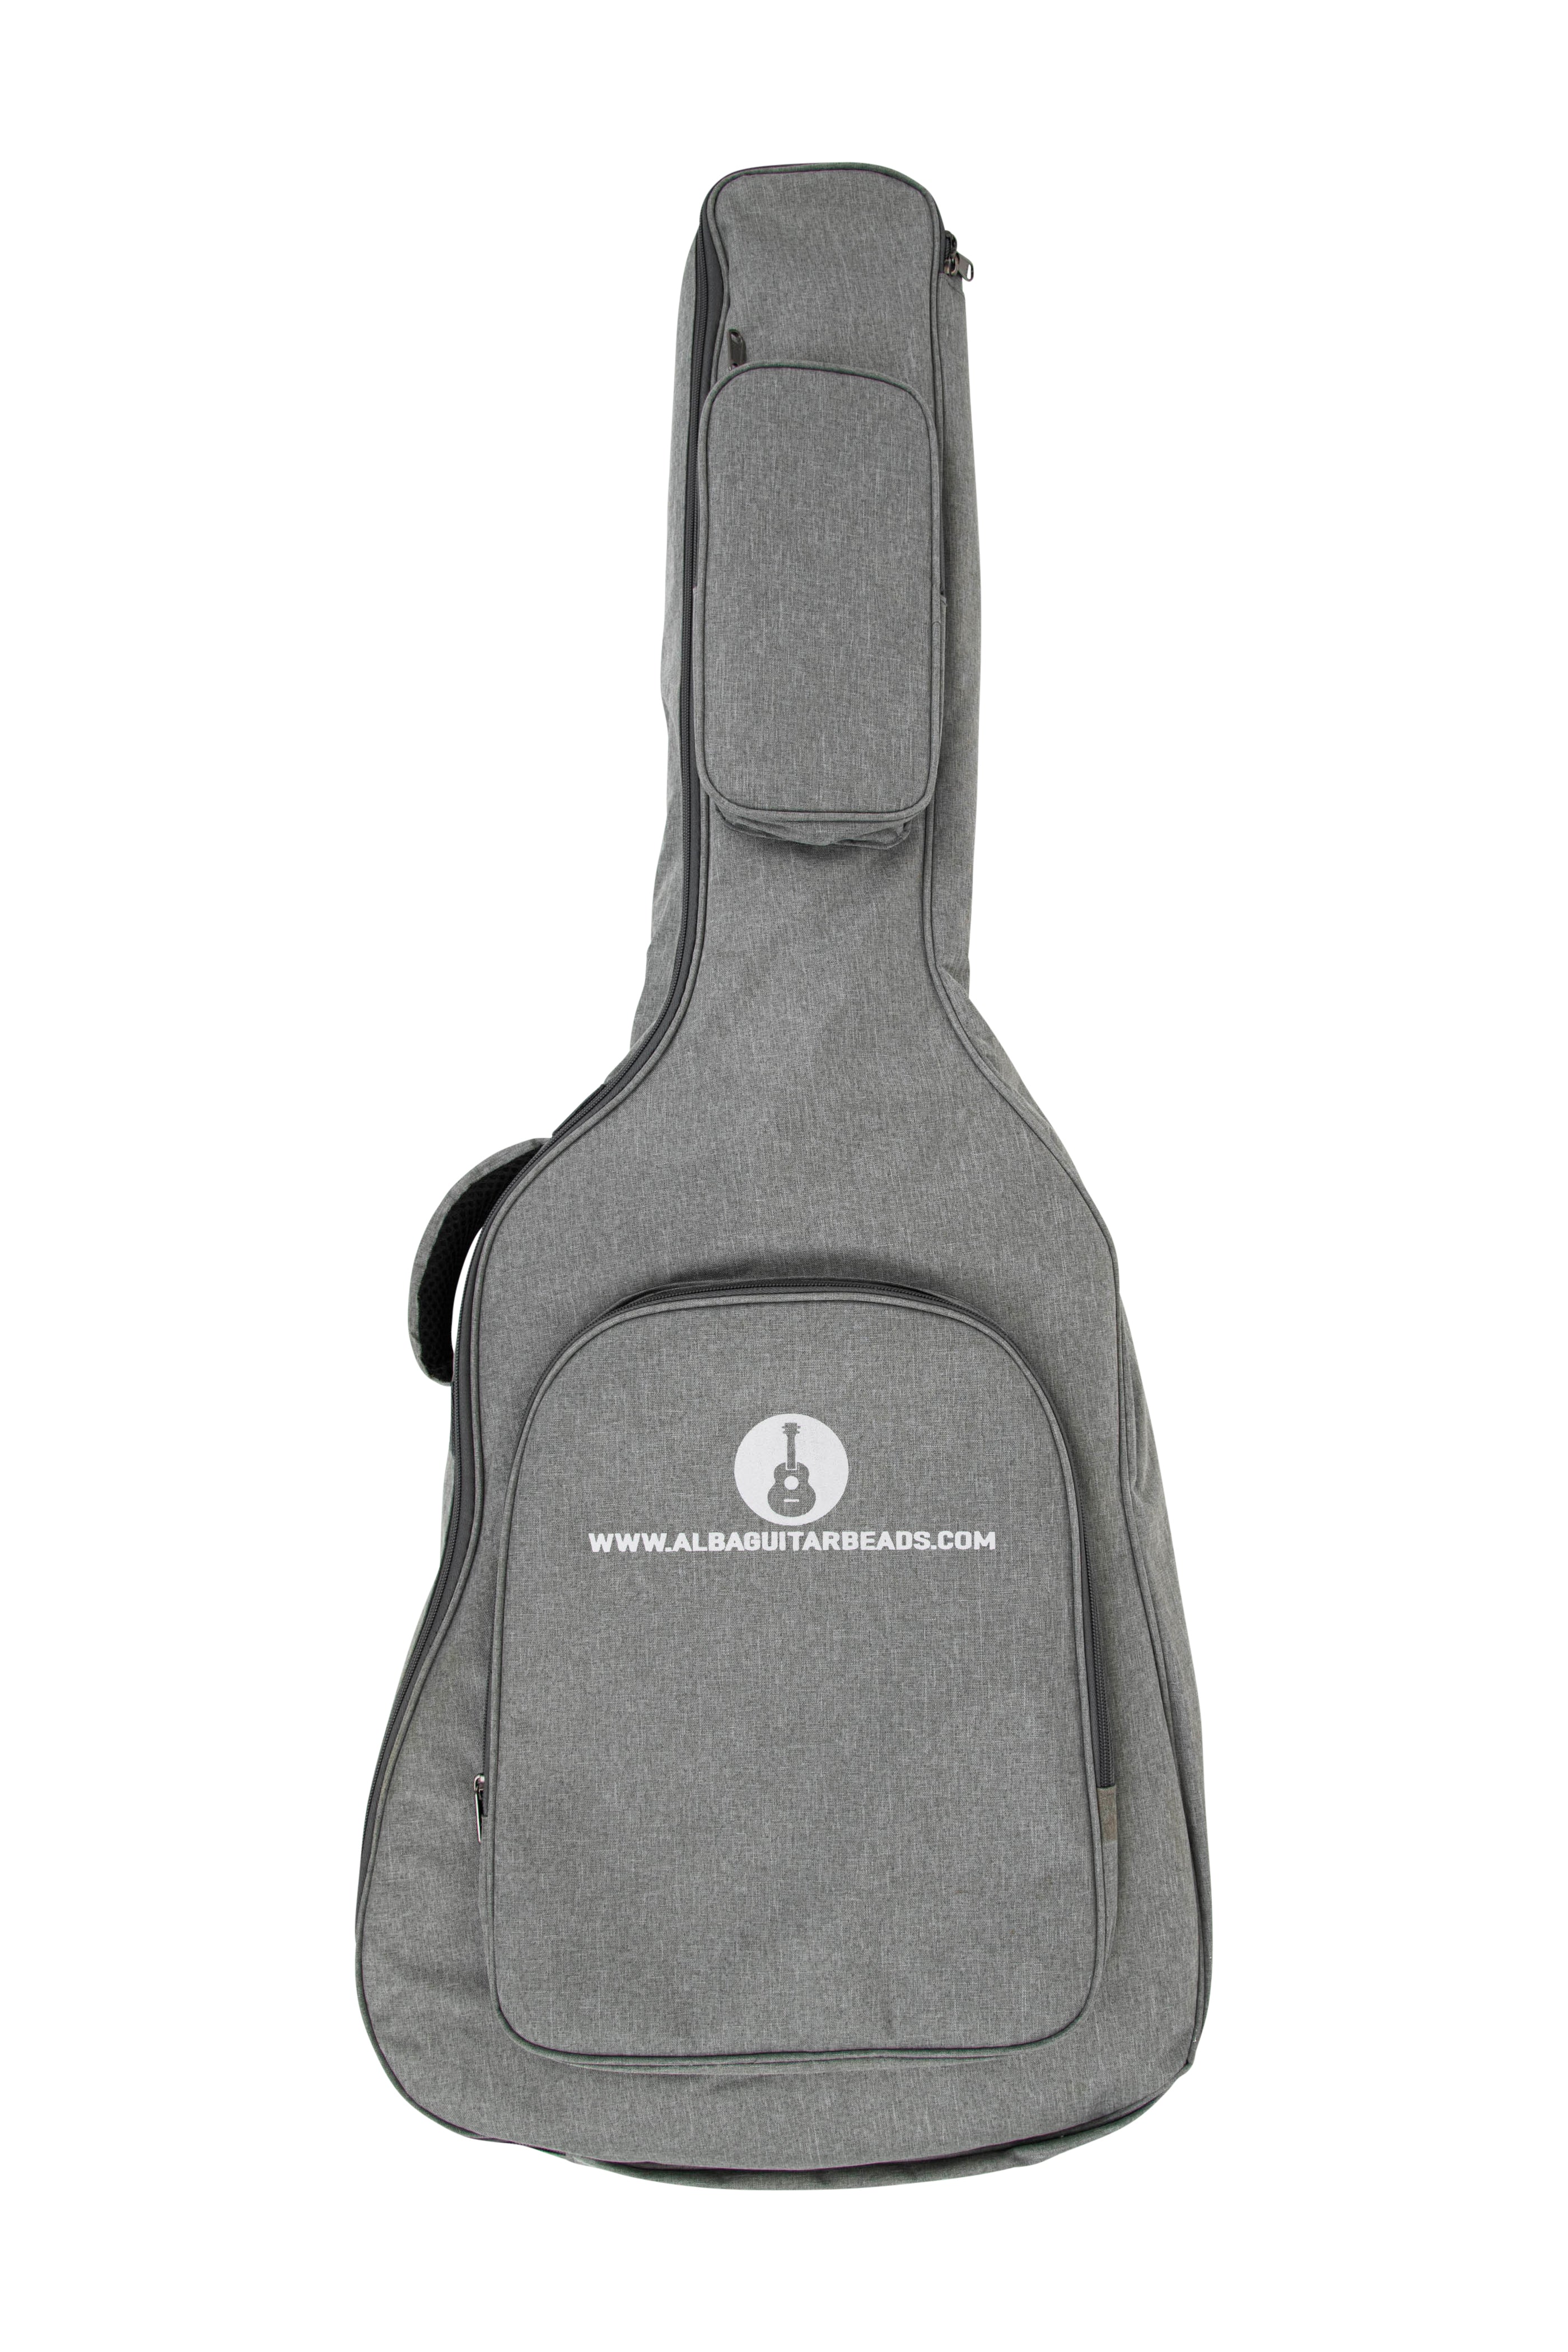 Soft Guitar Bag for classical guitars and flamenco guitars, gig bag for classical guitar and for flamenco guitars